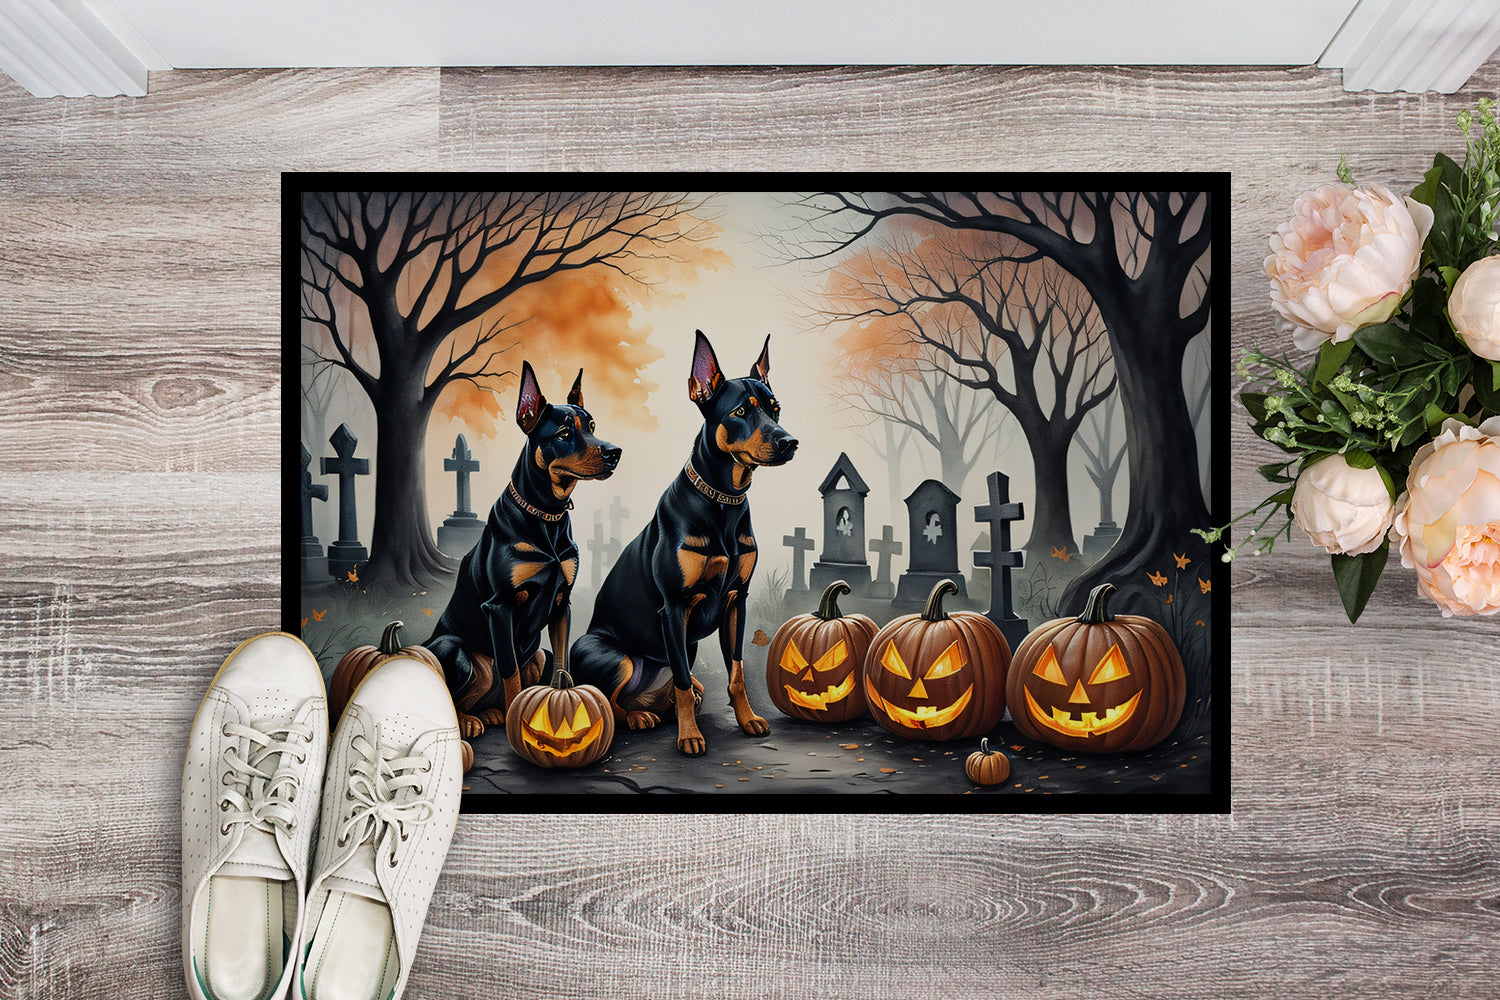 Buy this Doberman Pinscher Spooky Halloween Doormat 18x27